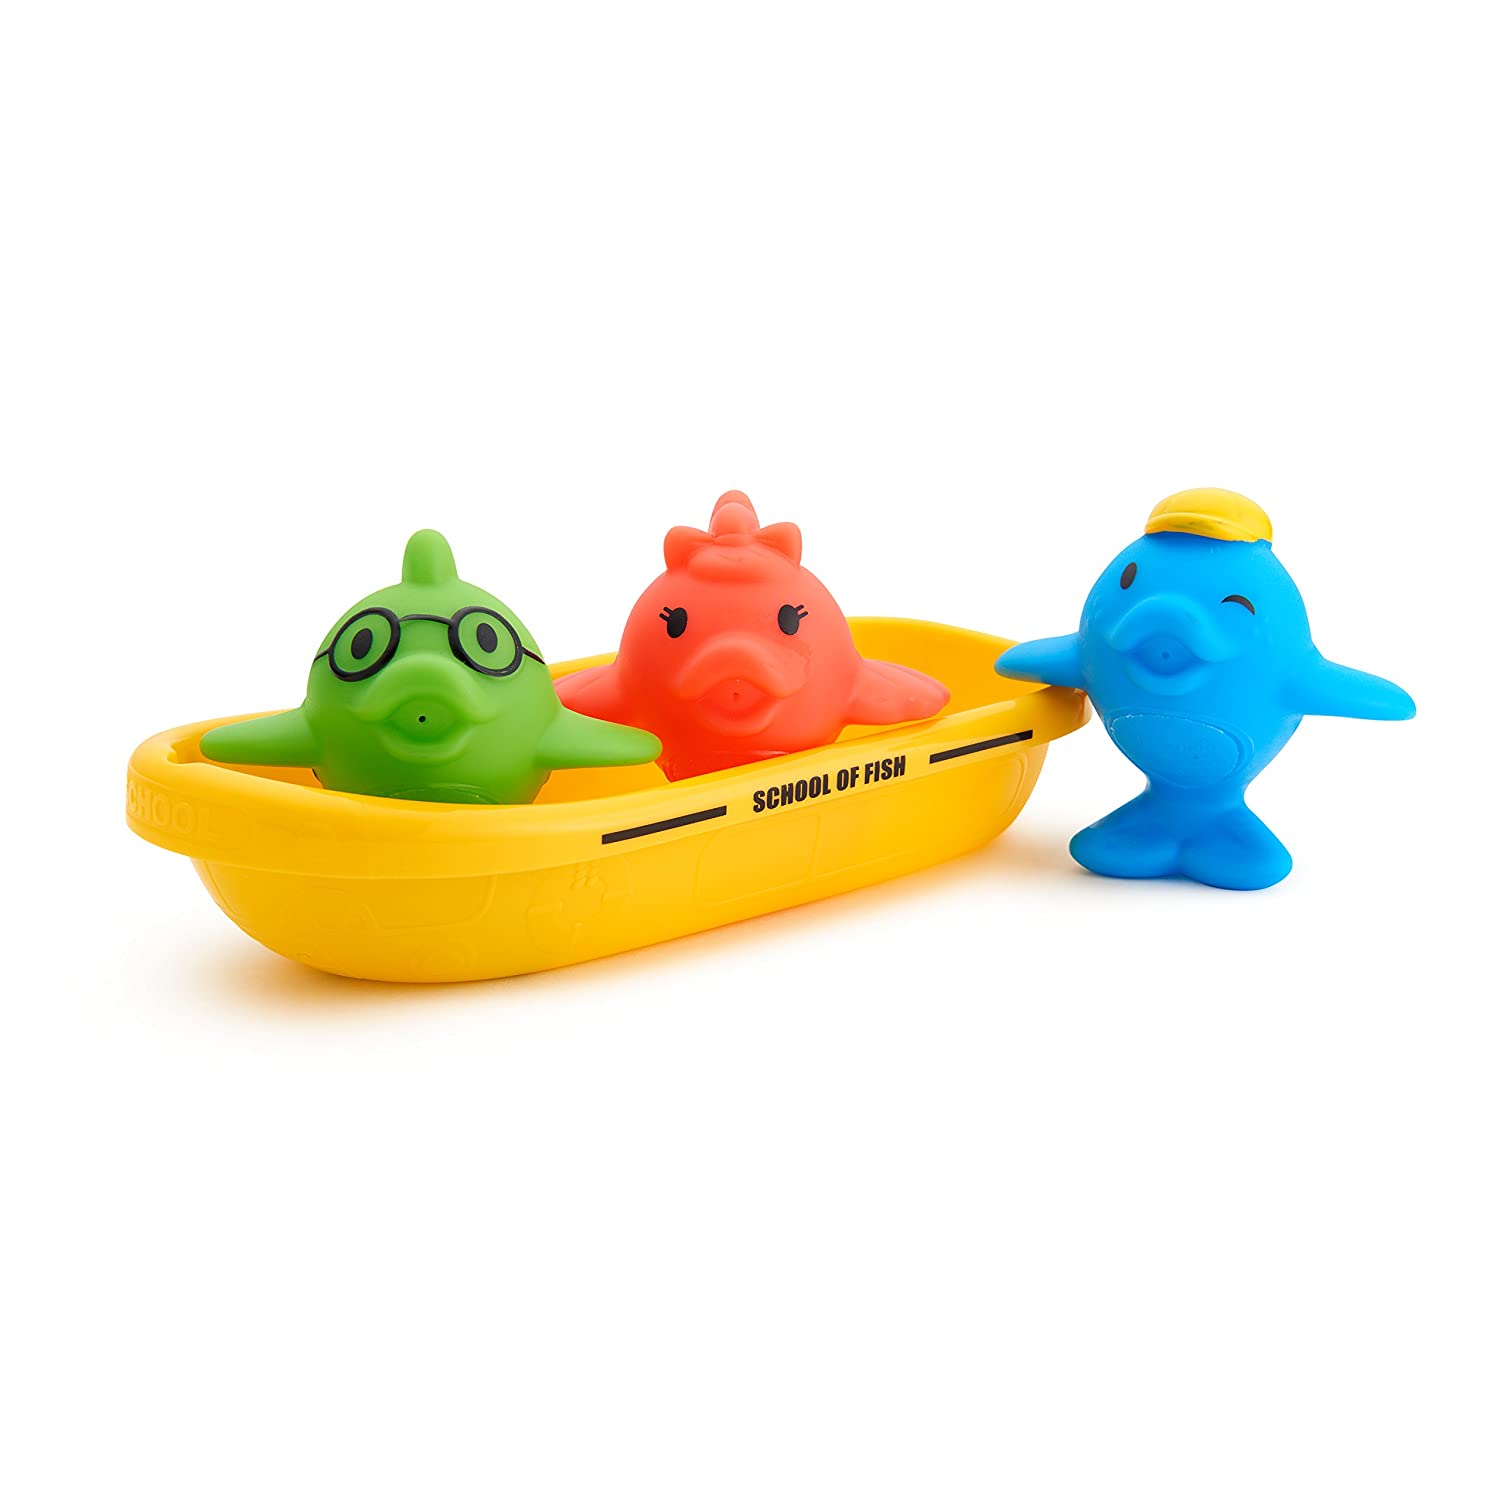 Pack de 3 juguetes de baño Play And Store